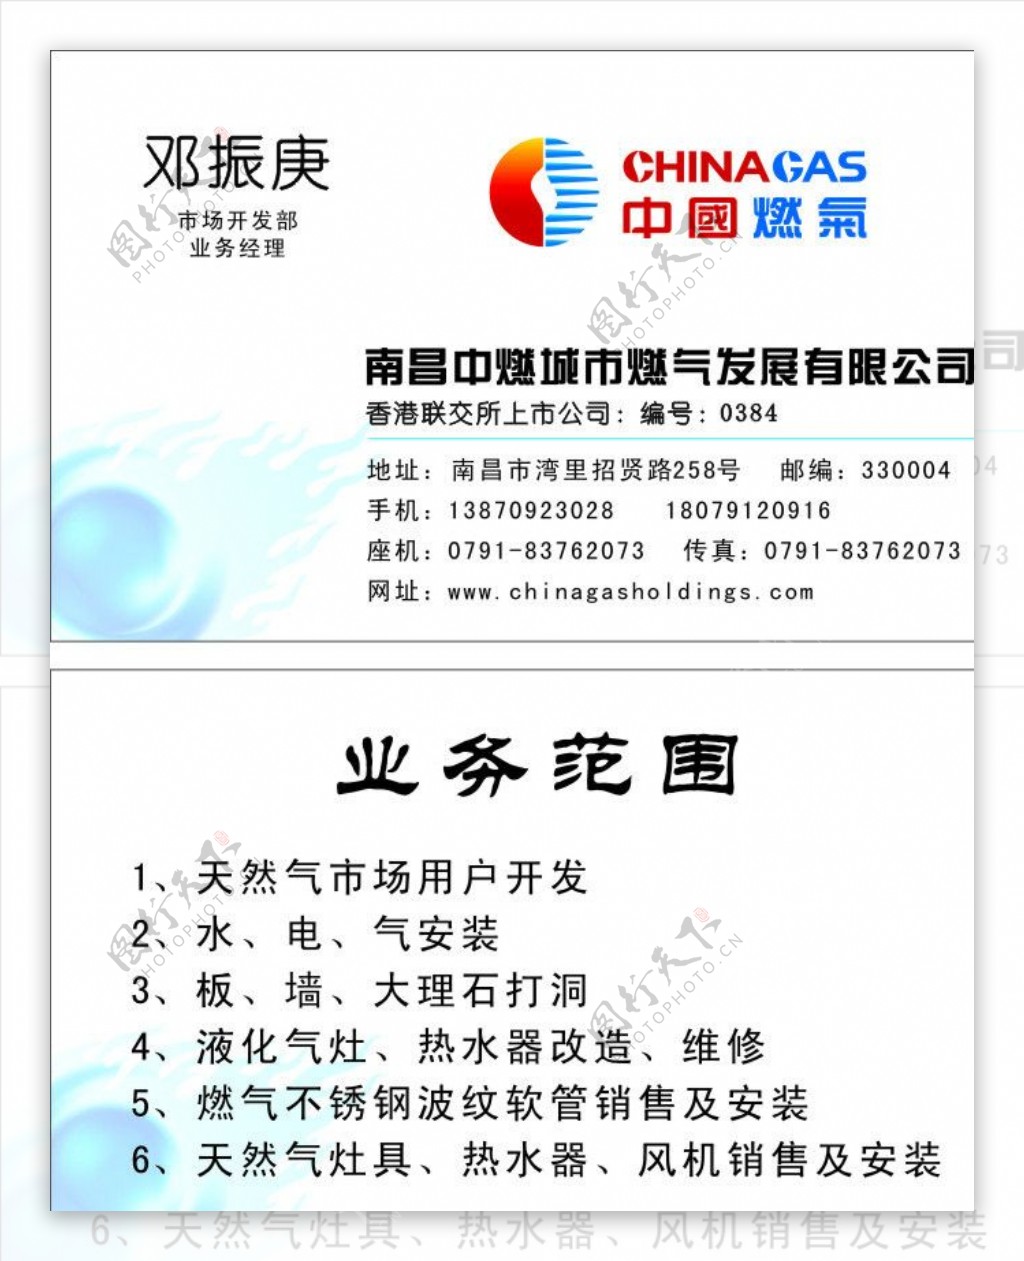 中国燃气名片设计图片